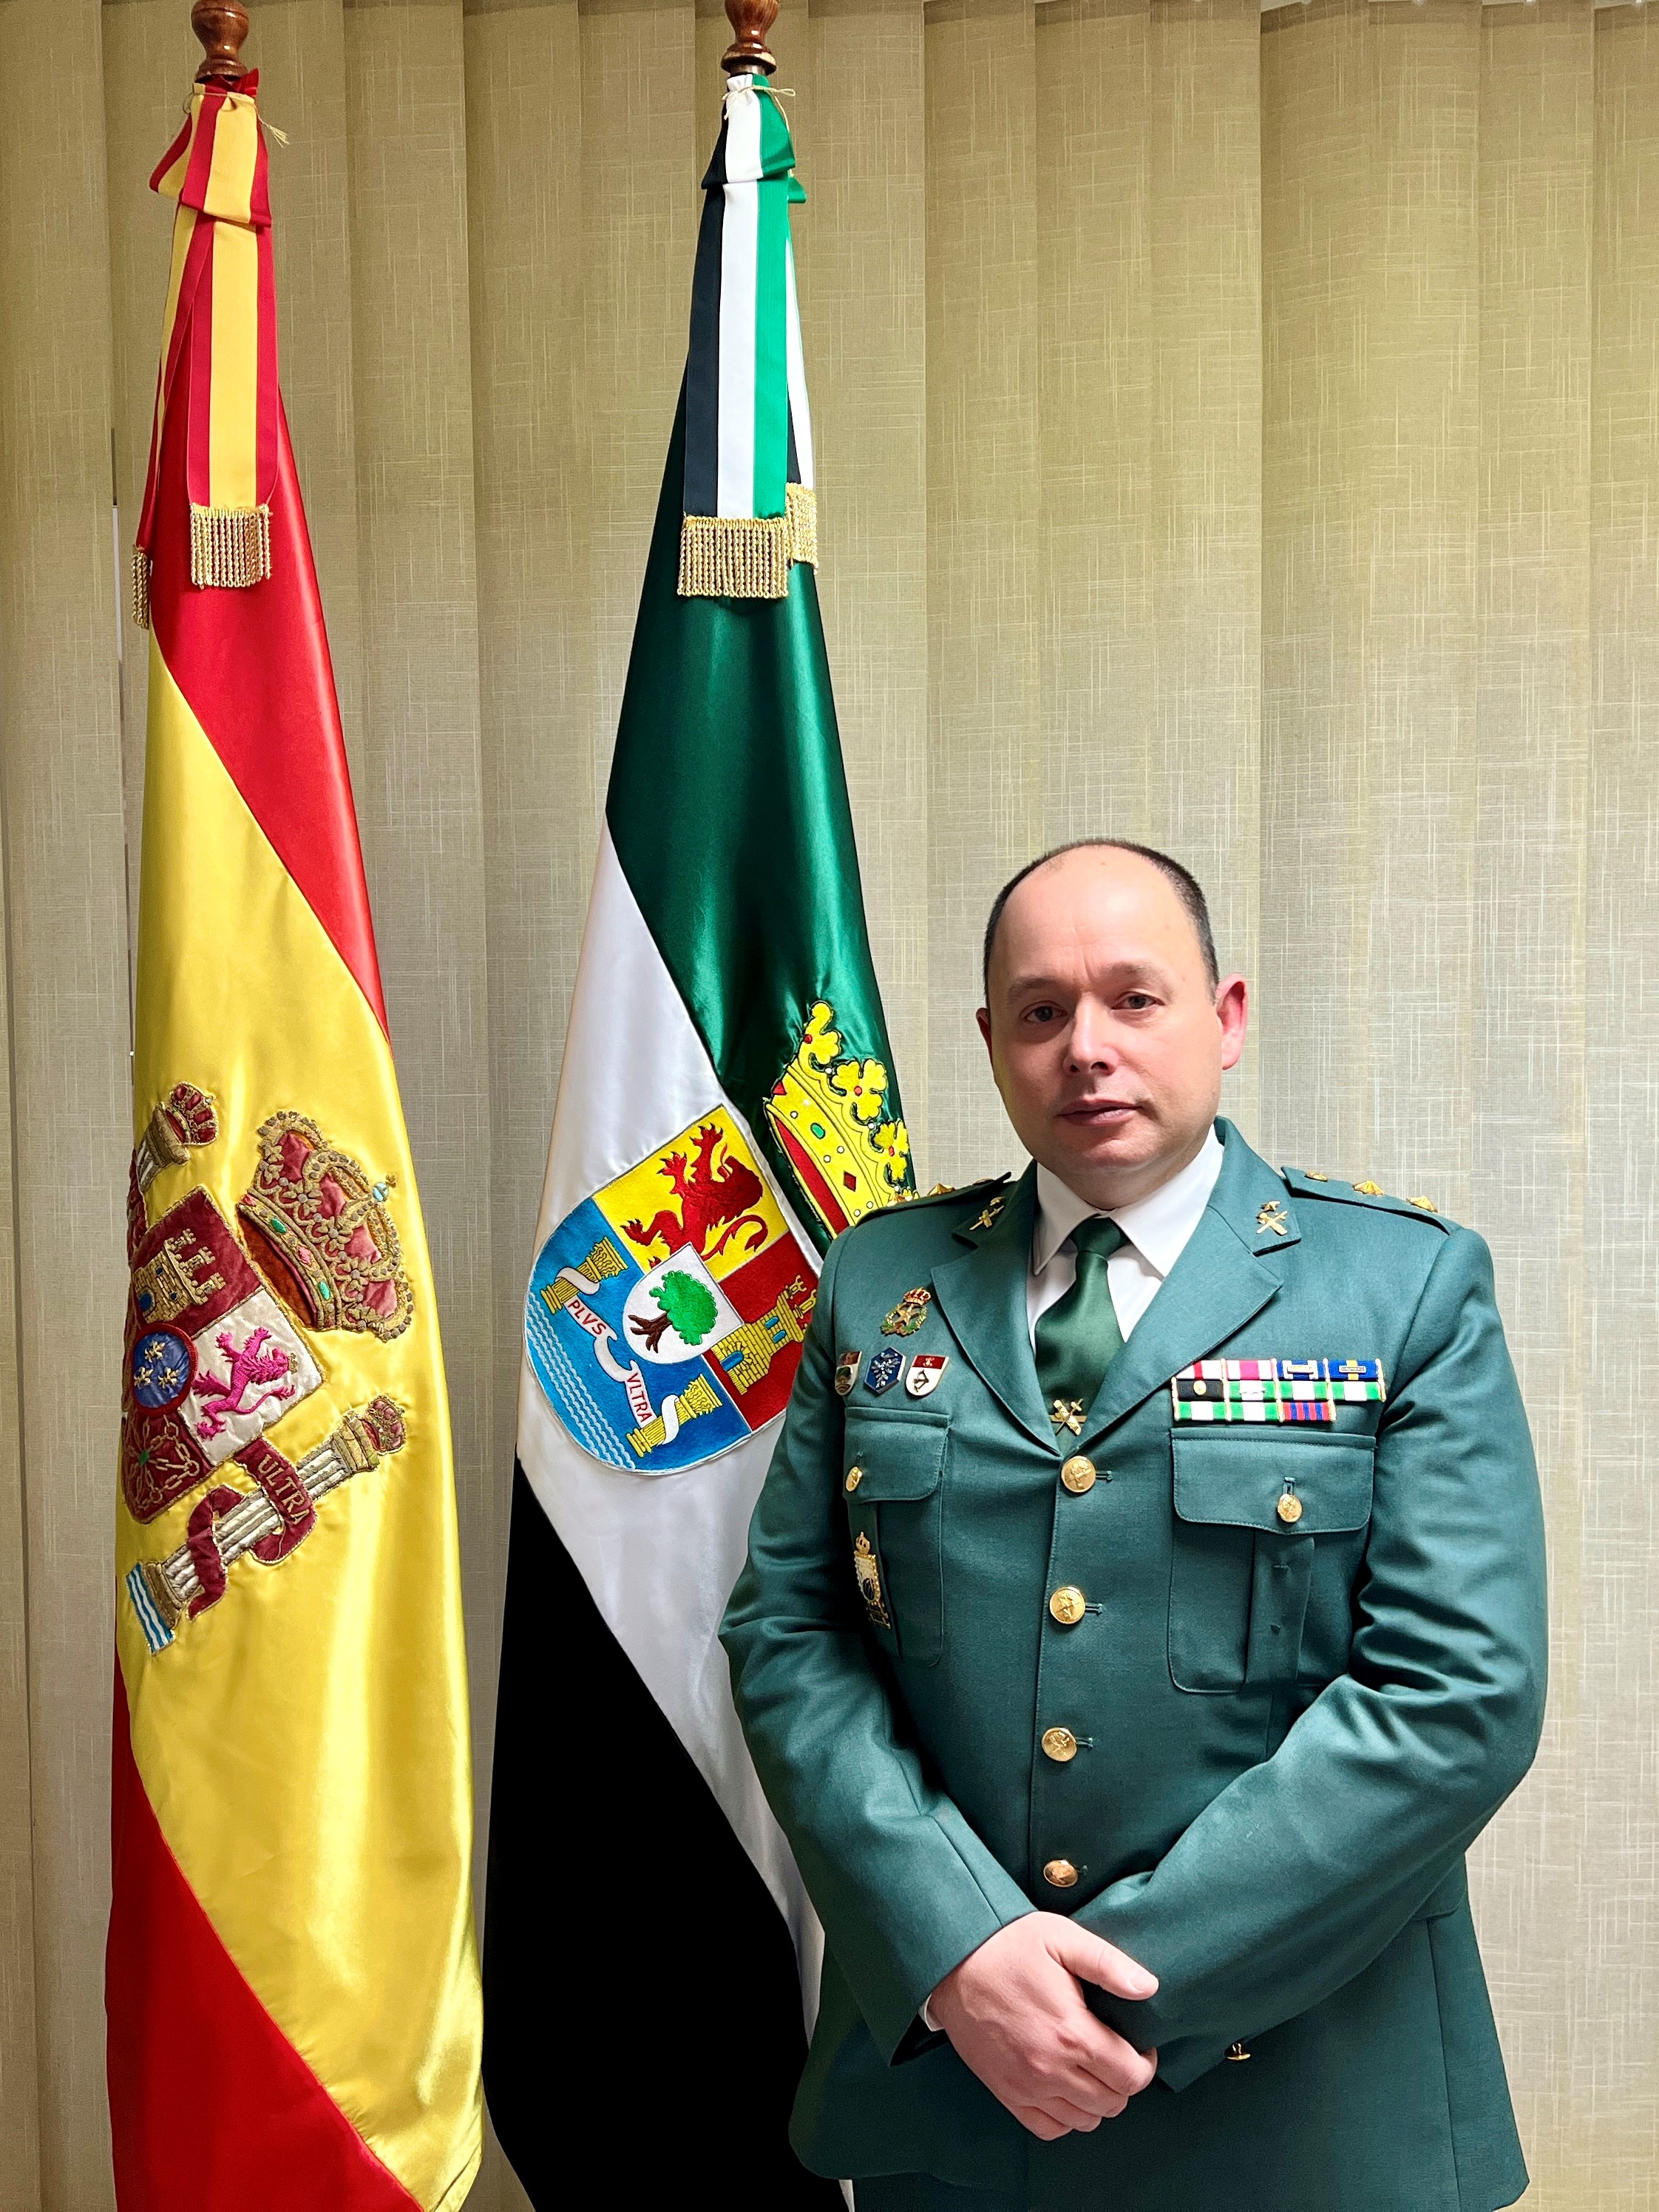 Teniente Coronel Rafael Roldán Parra